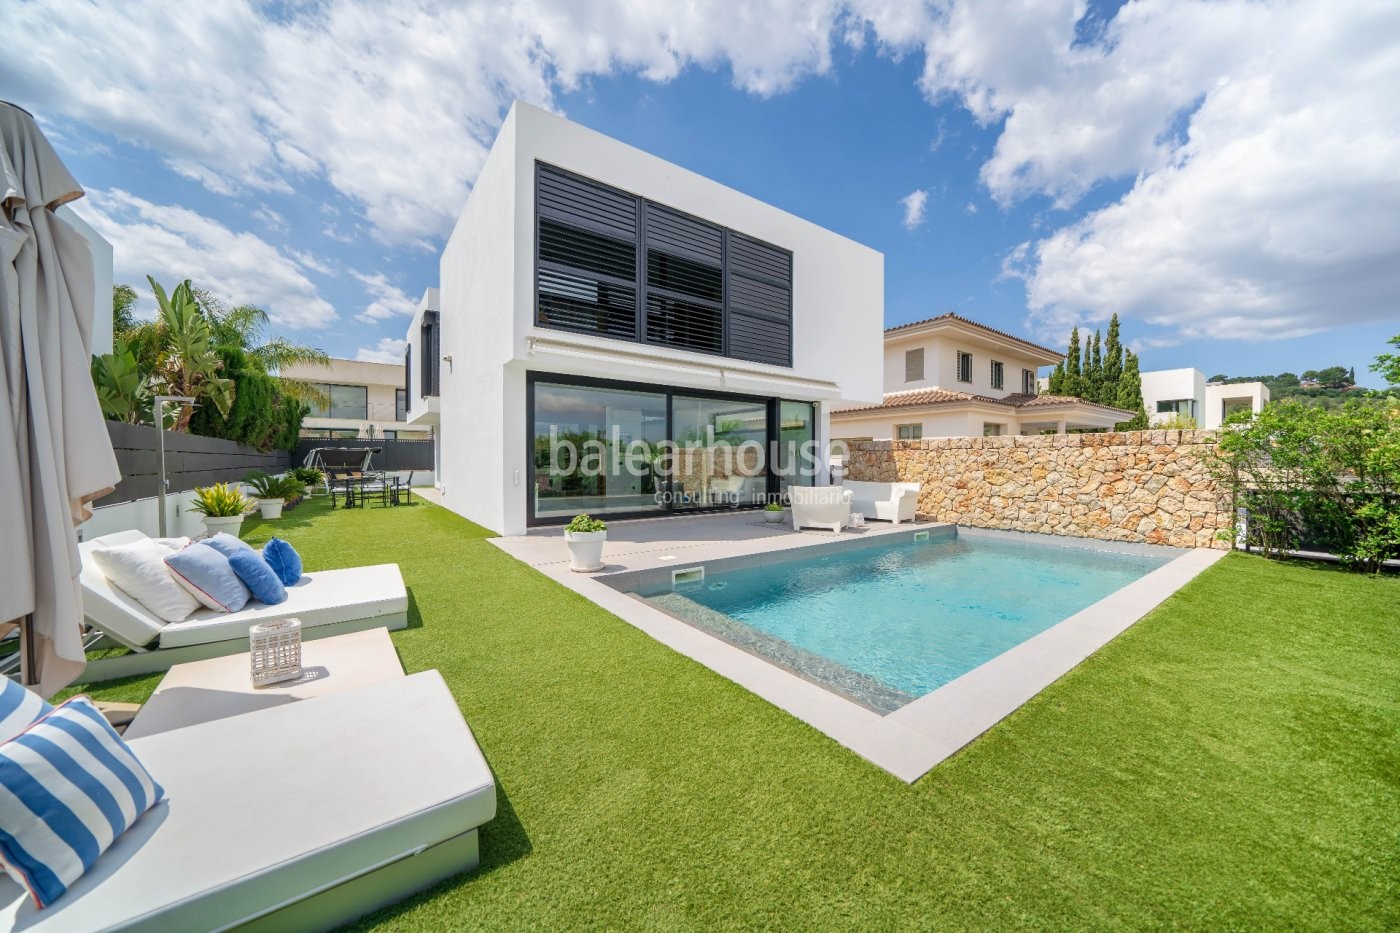 Excelente chalet luminoso y moderno con jardín y piscina ubicado en un entorno verde de Palma.